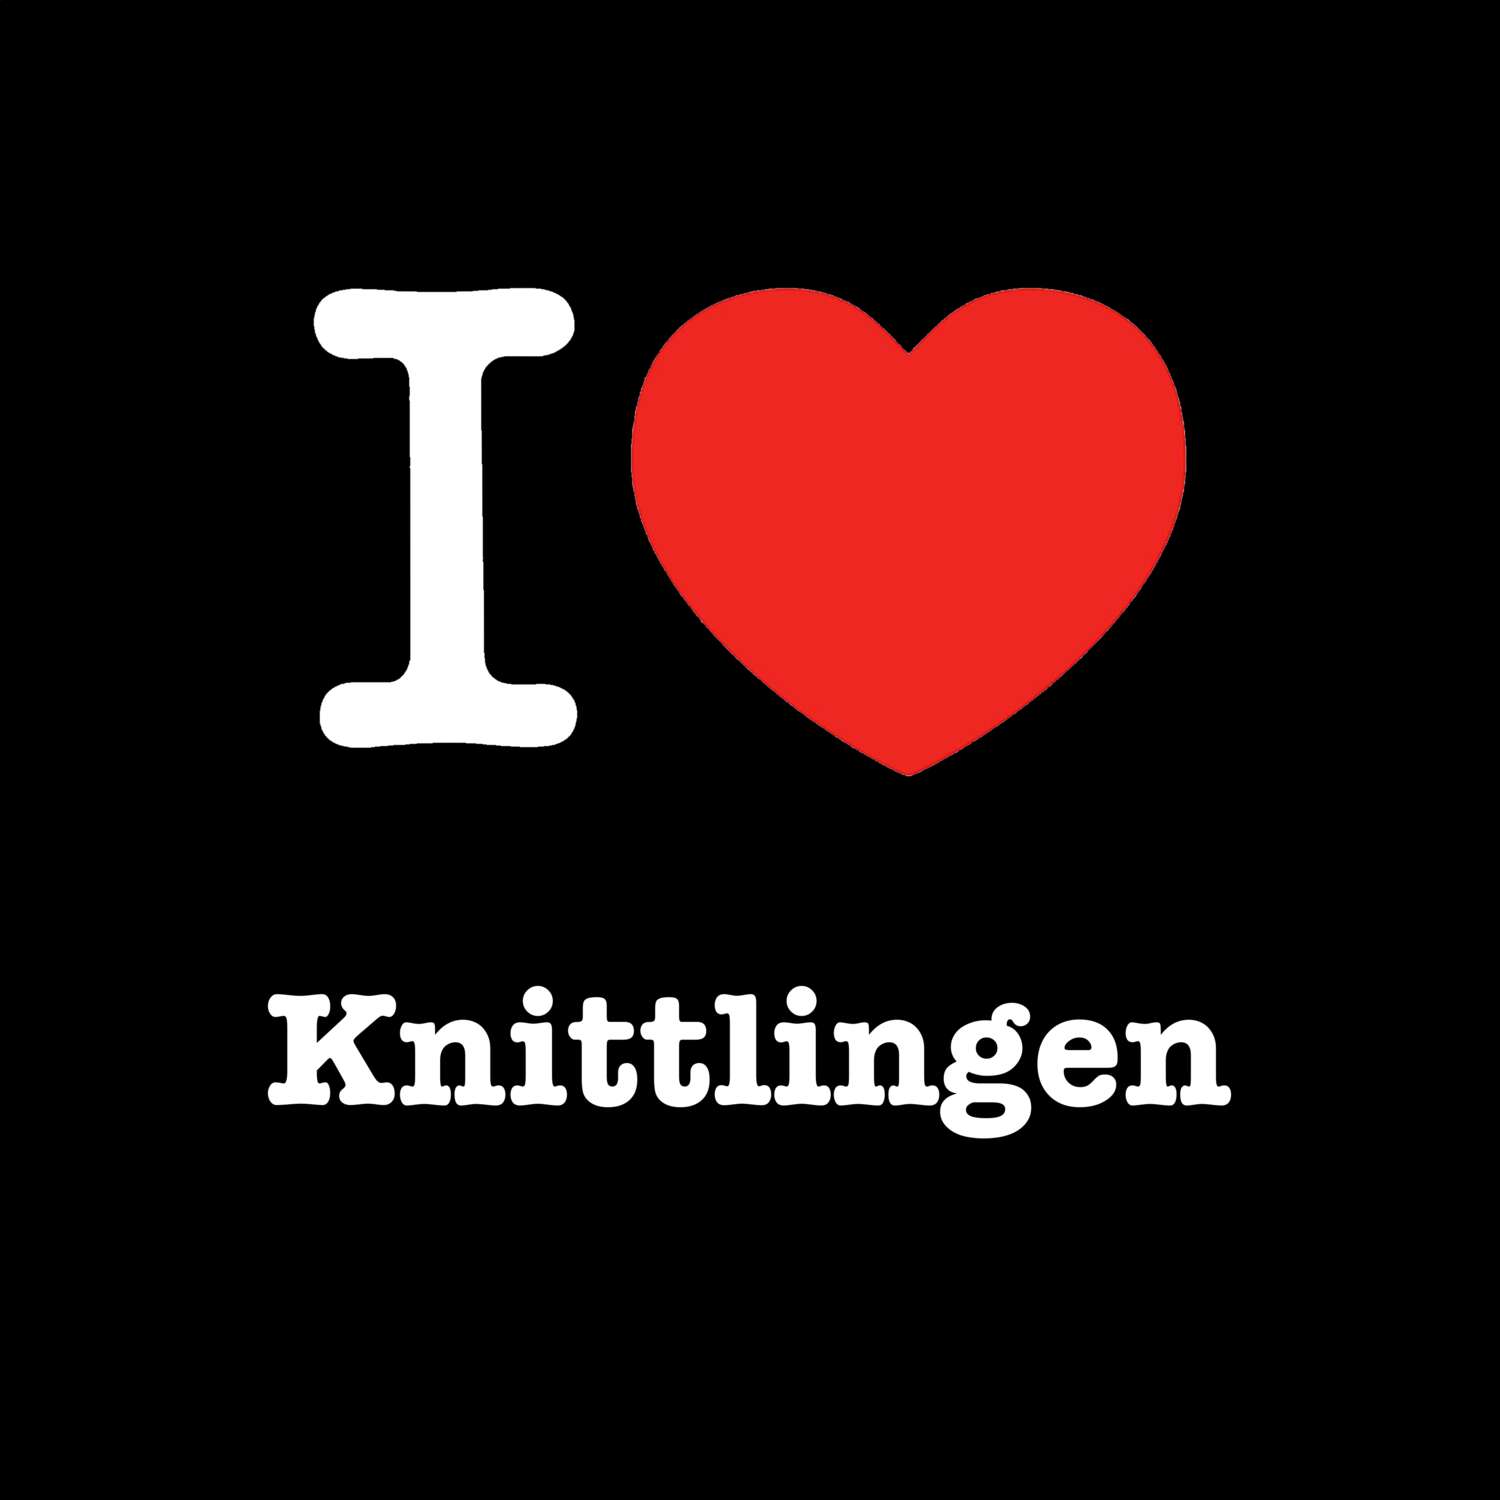 Knittlingen T-Shirt »I love«